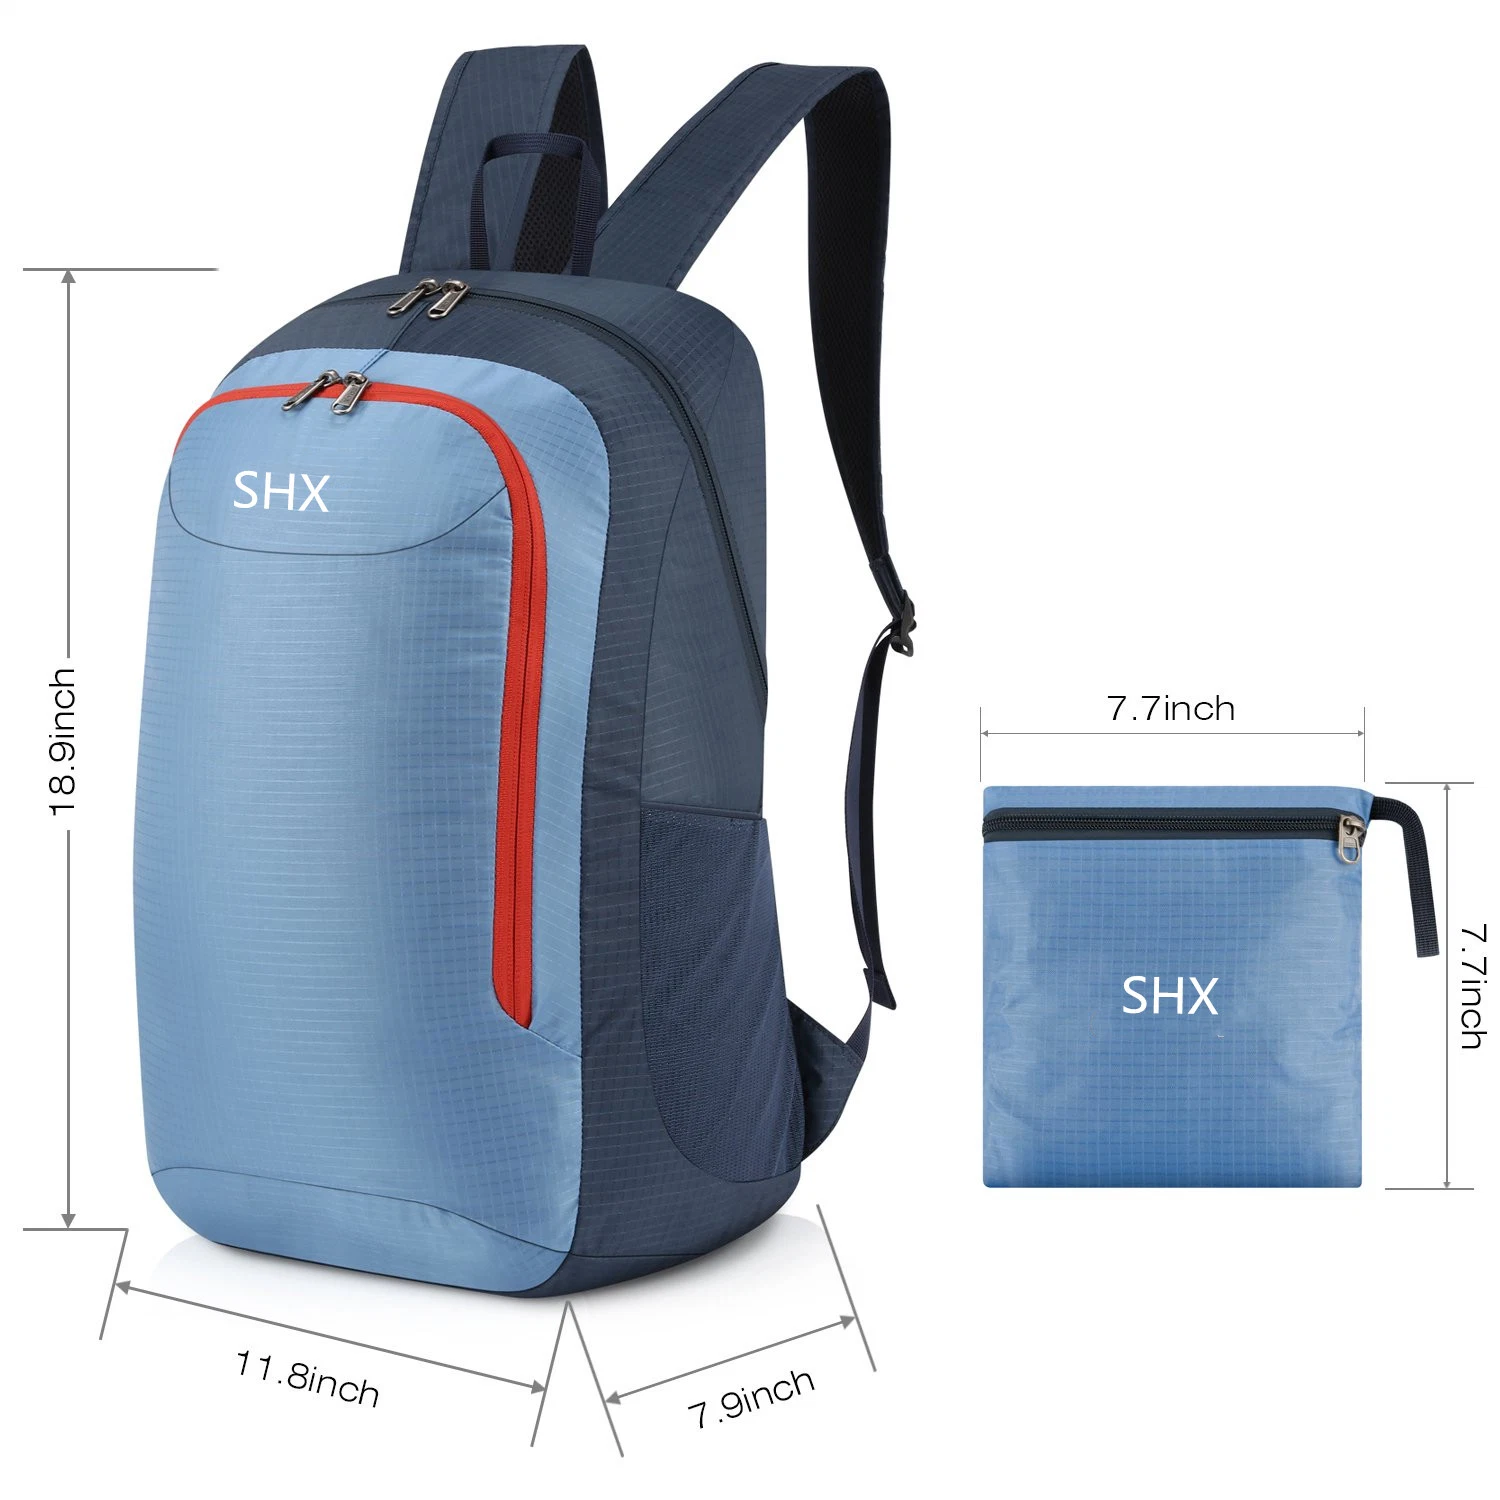 28L Lightweight Backpack Bag Handy Travel Bag Hiking Daypack